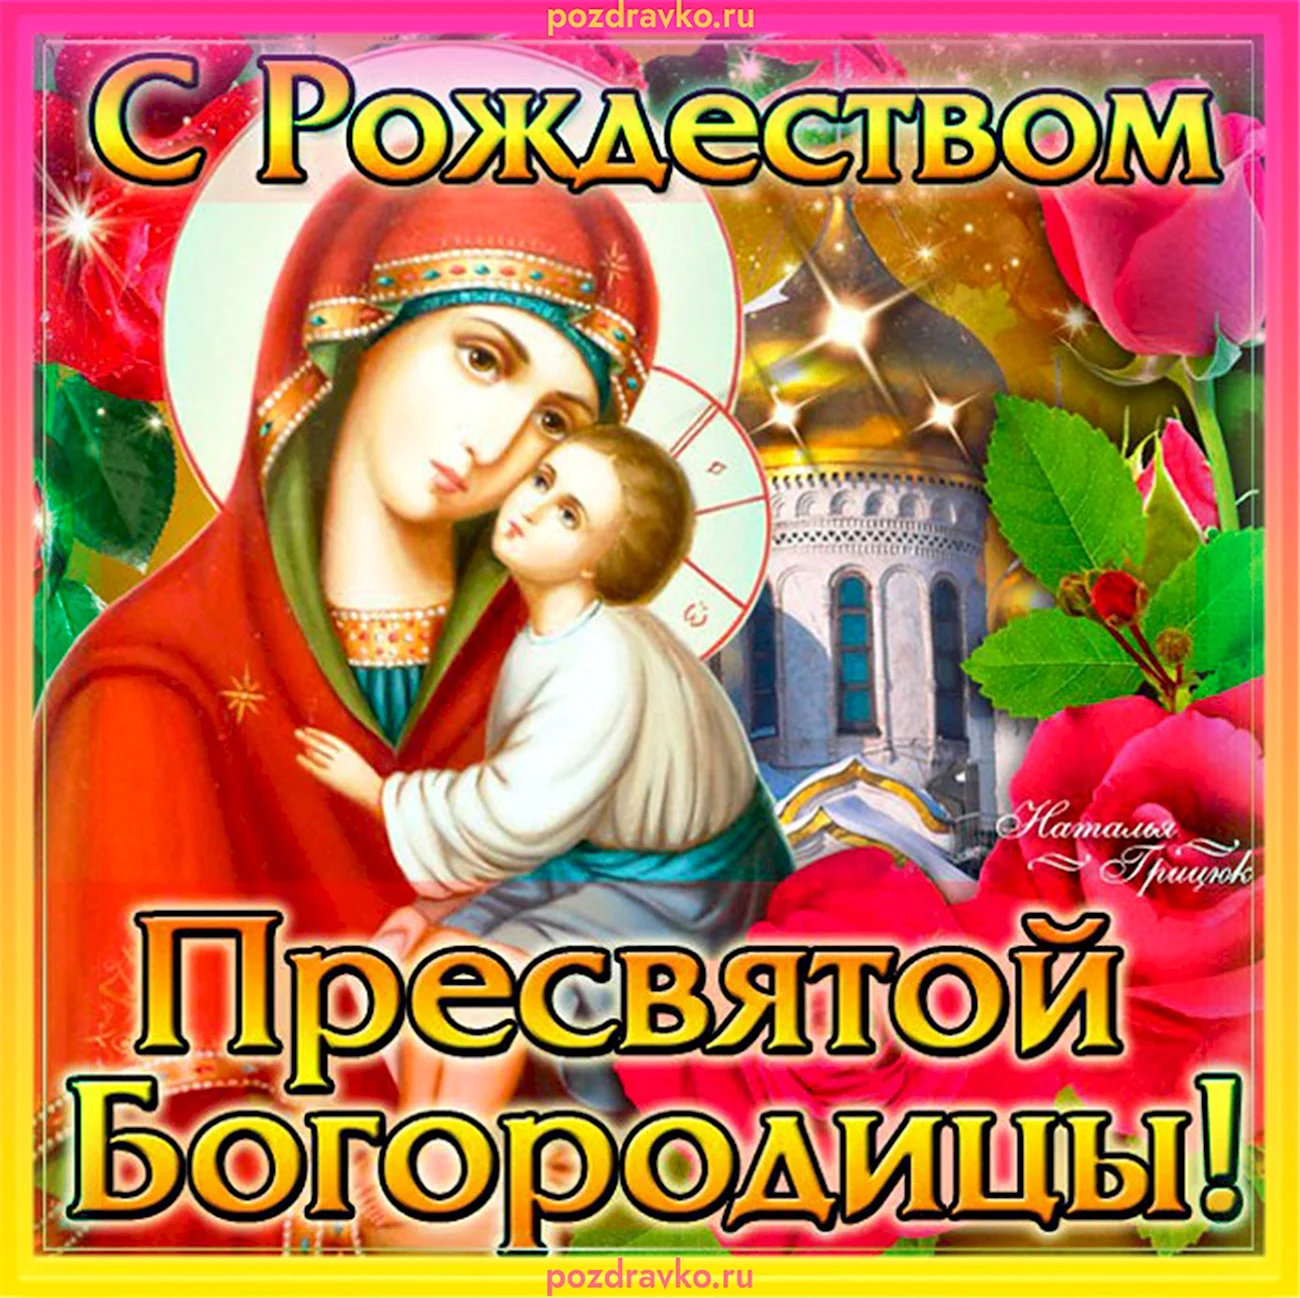 21 Сентября церковный праздник Рождество Пресвятой Богородицы. Поздравление